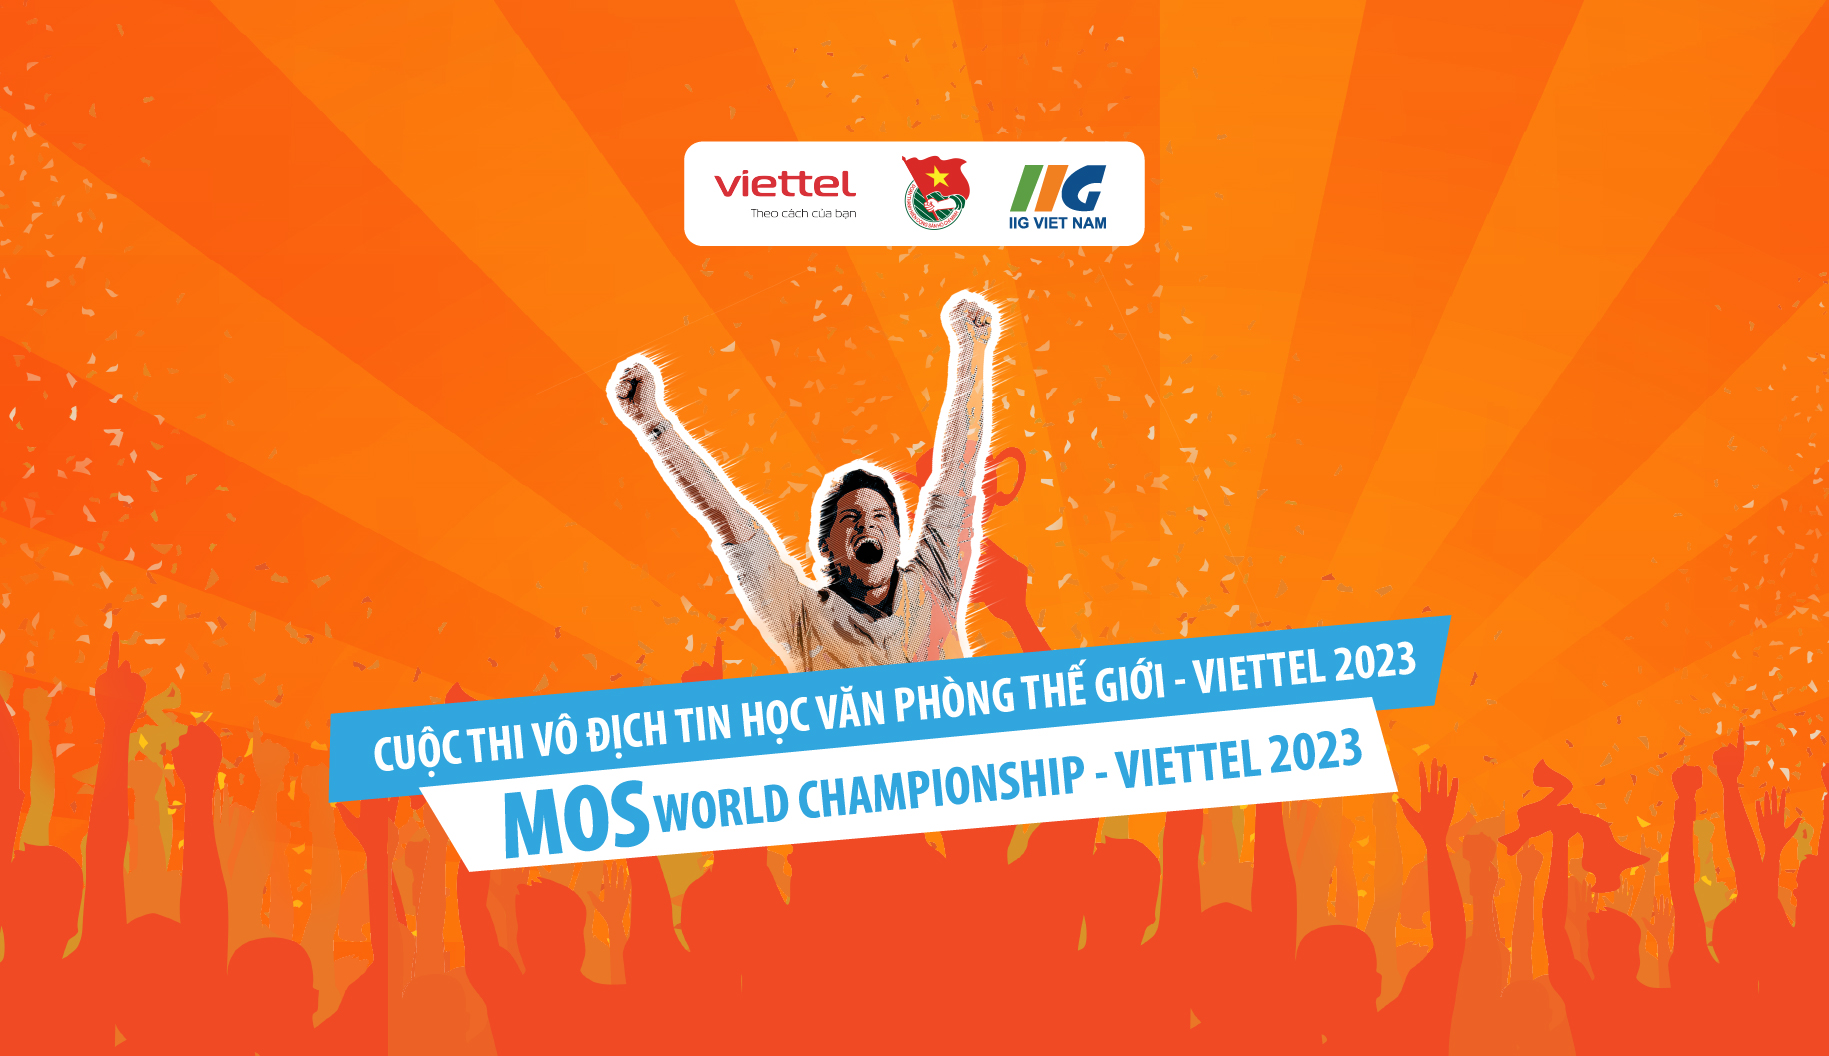 Học sinh trường THPT chuyên Lê Hồng Phong tiếp tục trở thành Tân Vô địch quốc gia cuộc thi MOSWC 2023 và đại diện Việt Nam tranh tài tại vòng chung kết thế giới tại Hoa Kỳ